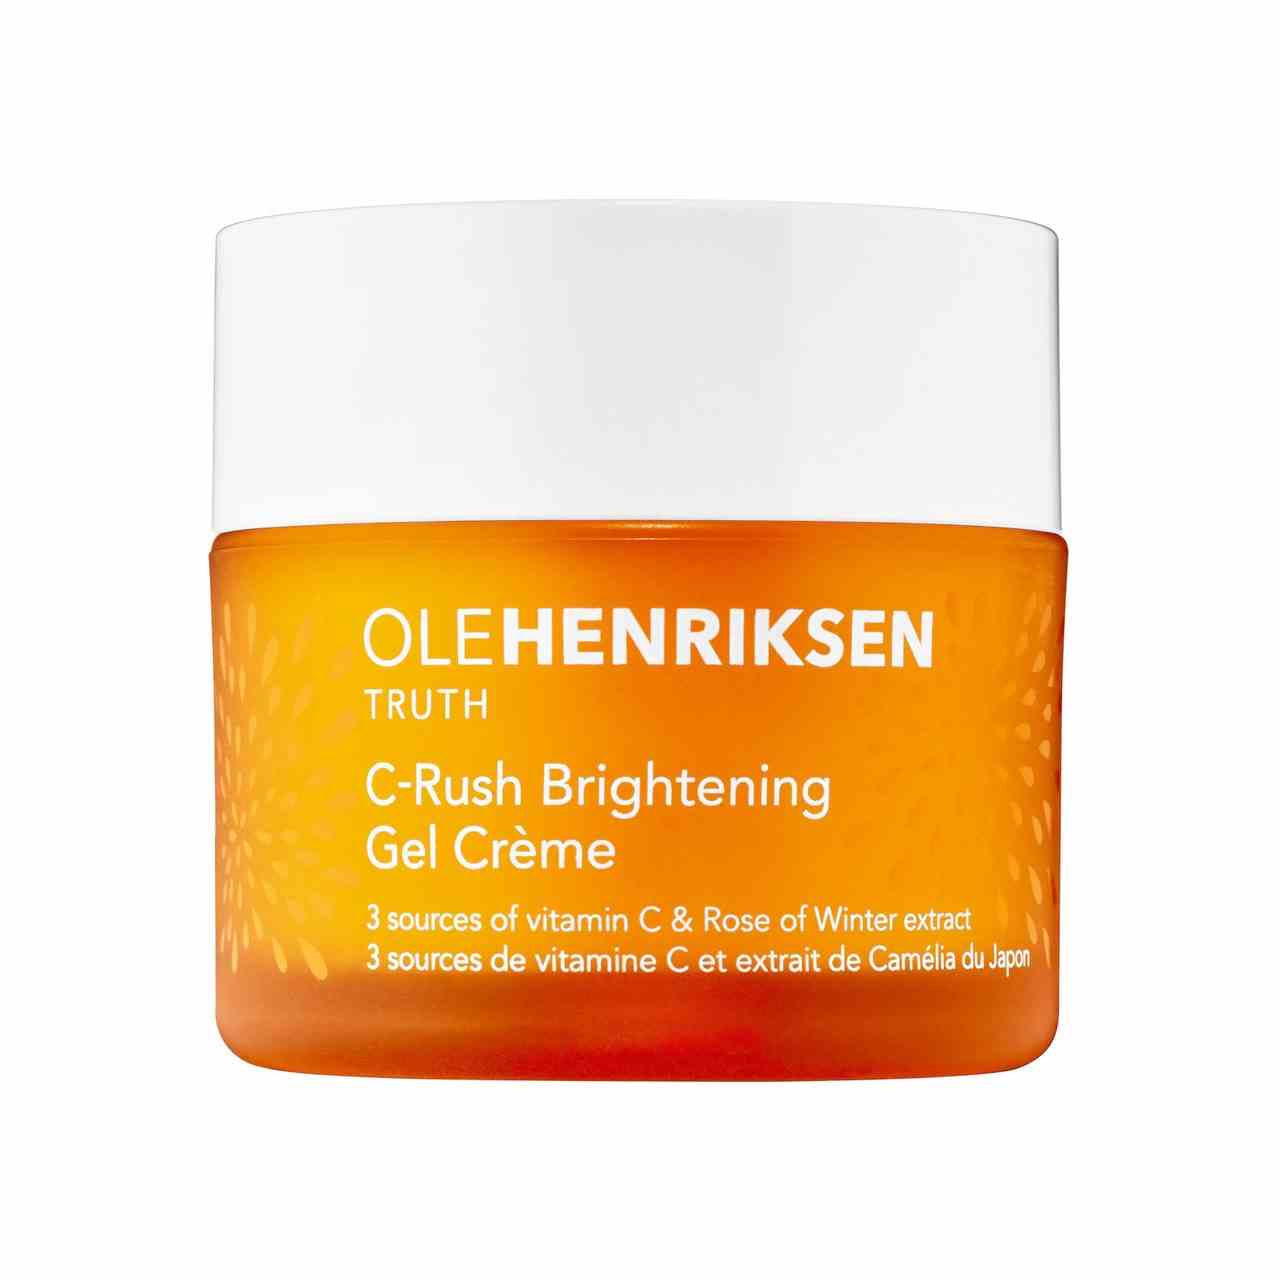 Ole Henriksen C-Rush Brightening Gel Crème orange Glas mit weißem Deckel auf weißem Hintergrund